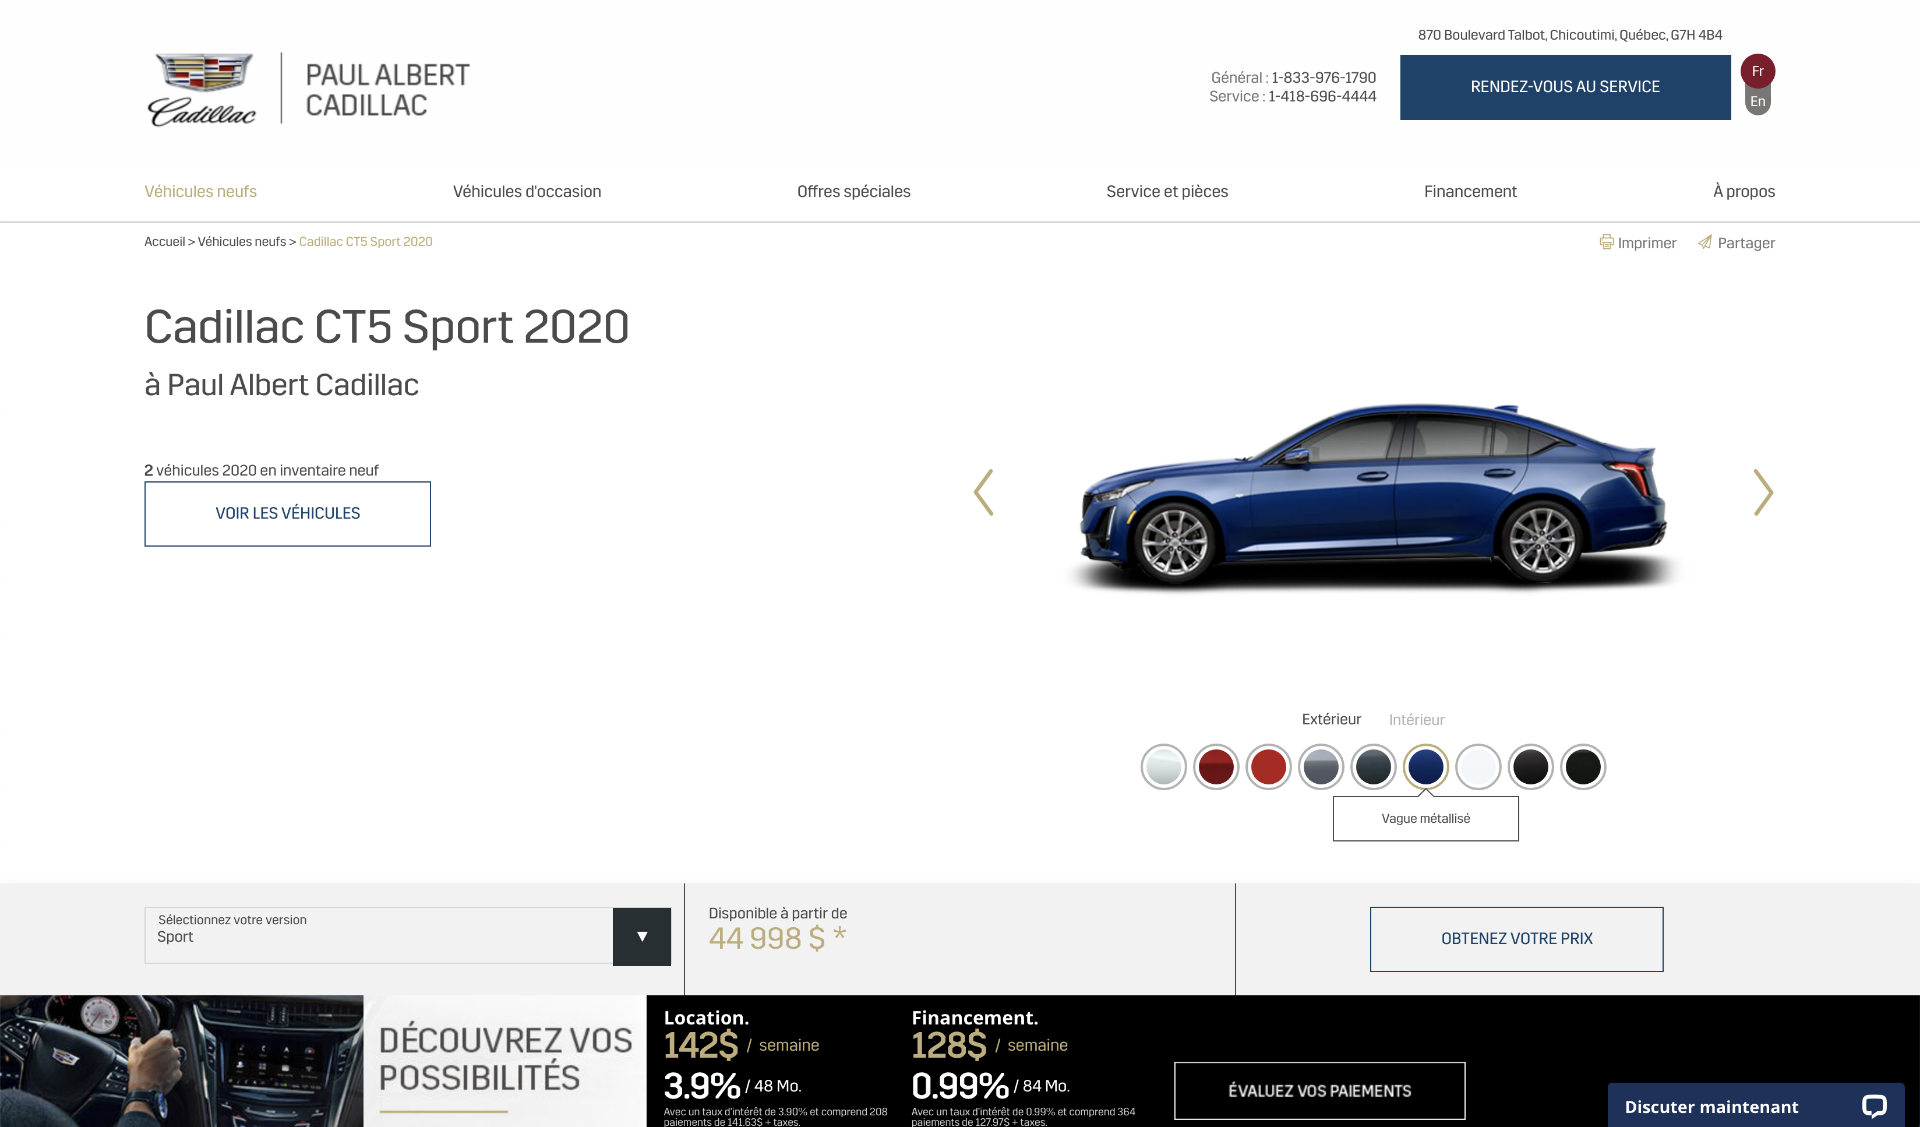 Comment configurer un nouveau véhicule Cadillac 2020 sur notre site